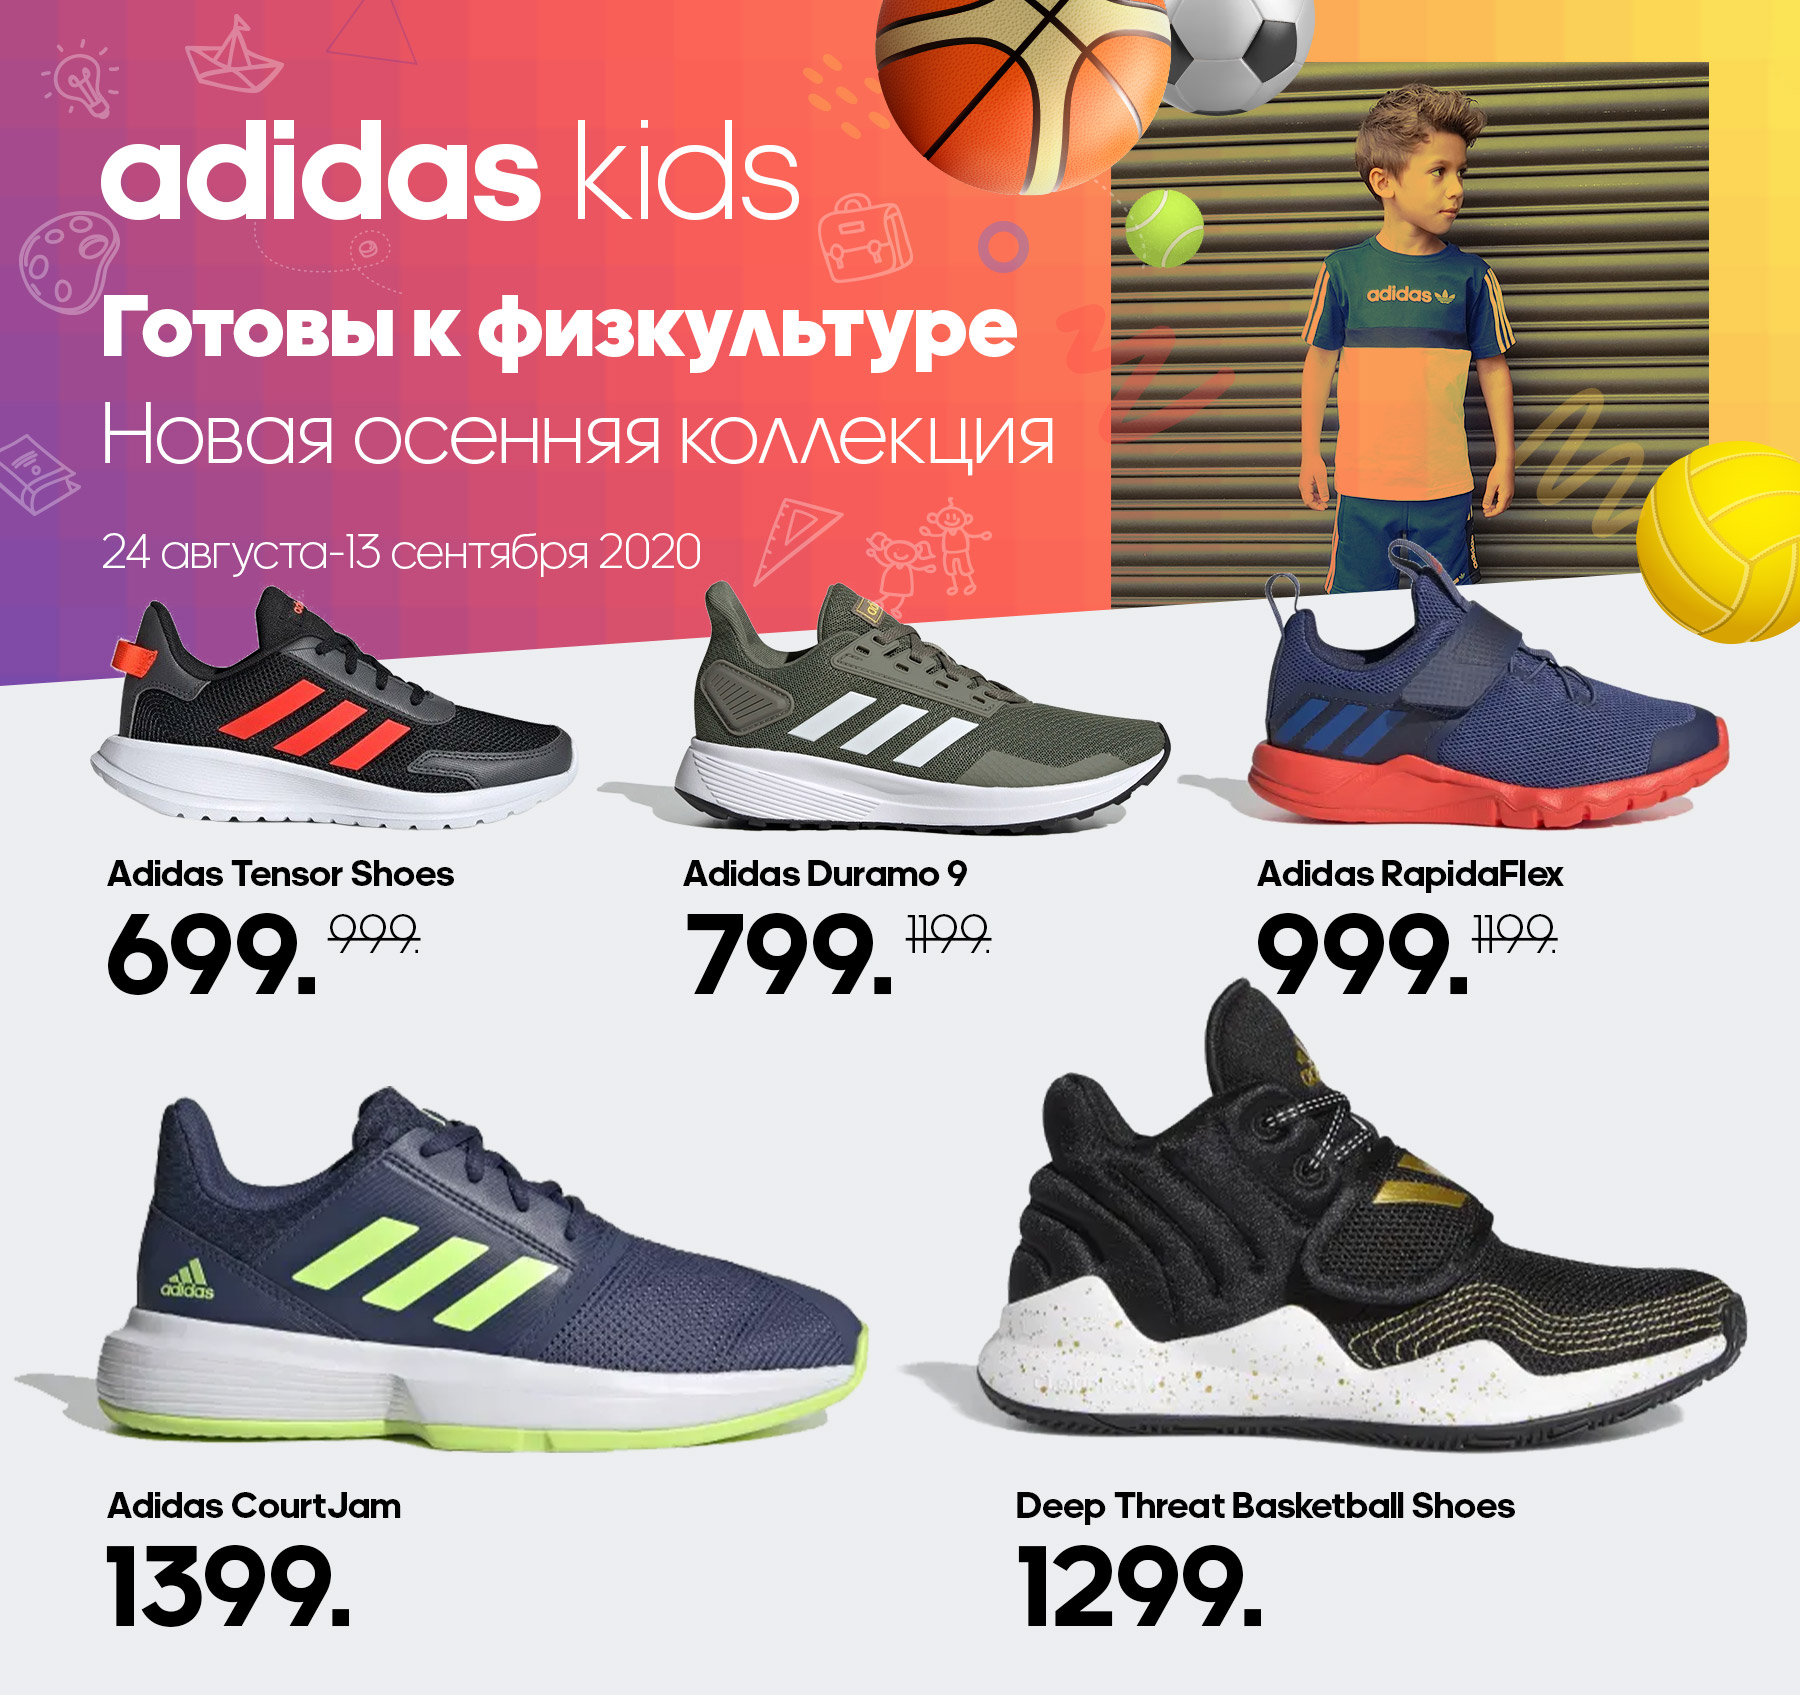 Адидас каталог товаров цены. Магазин адидас. Адидас интернет магазин. Adidas каталог. Adidas Kids.